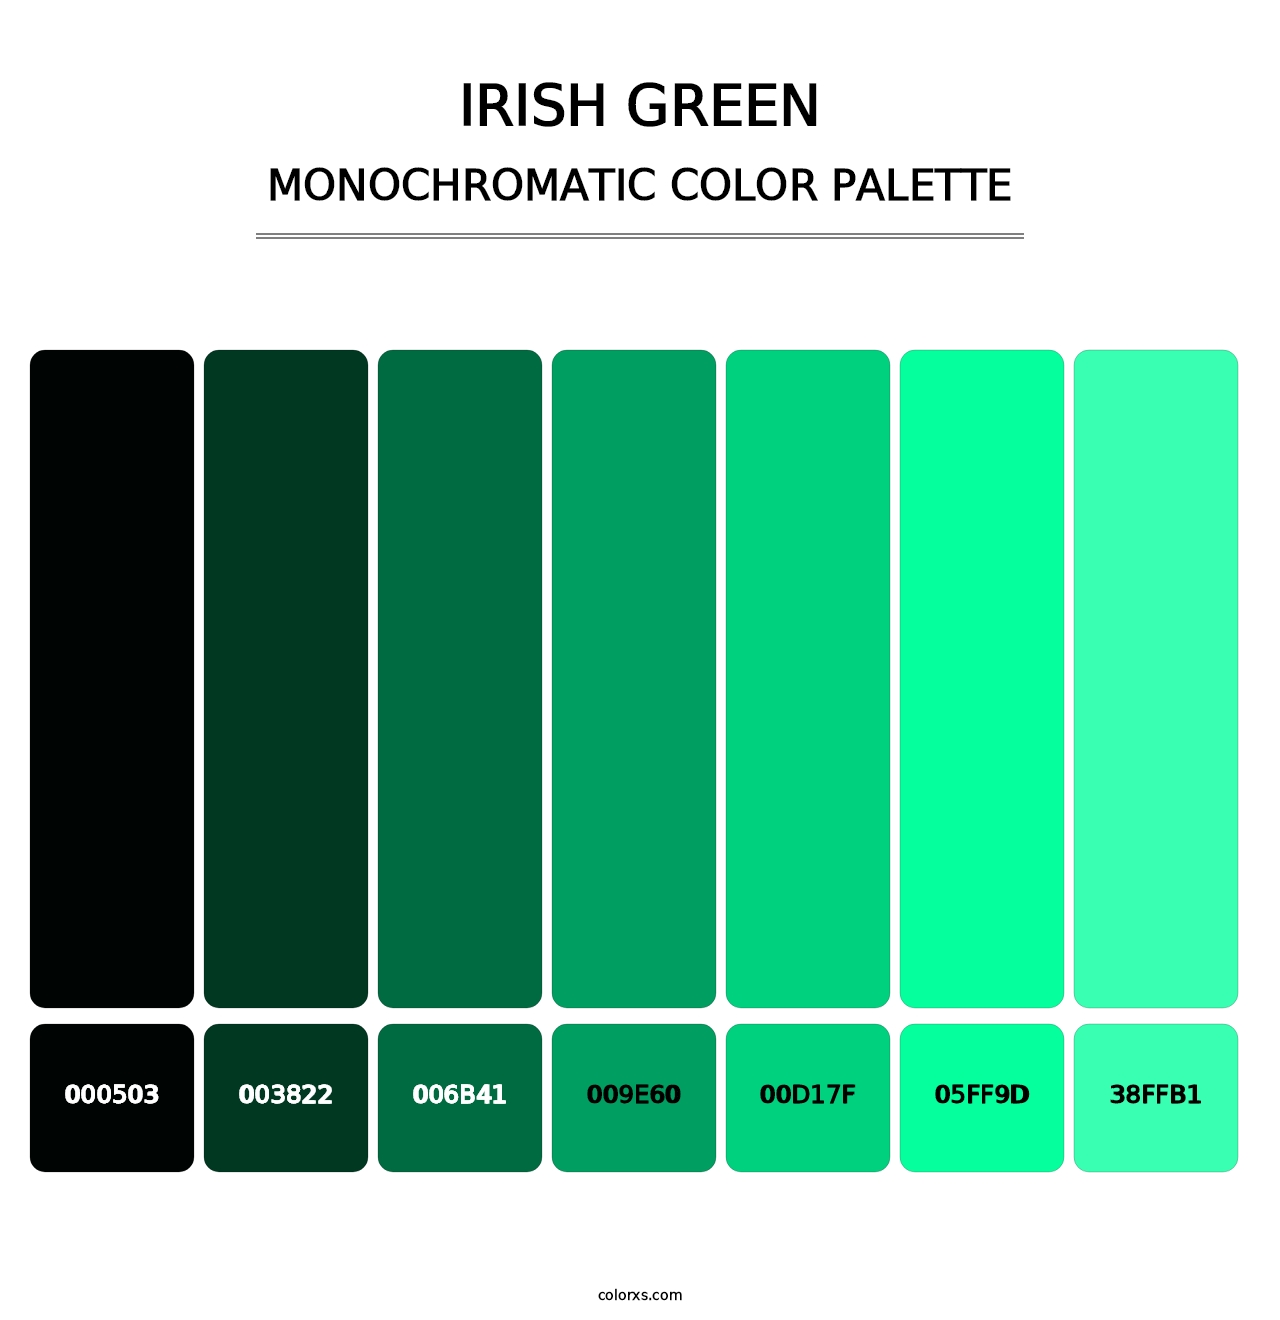 Irish Green - Monochromatic Color Palette